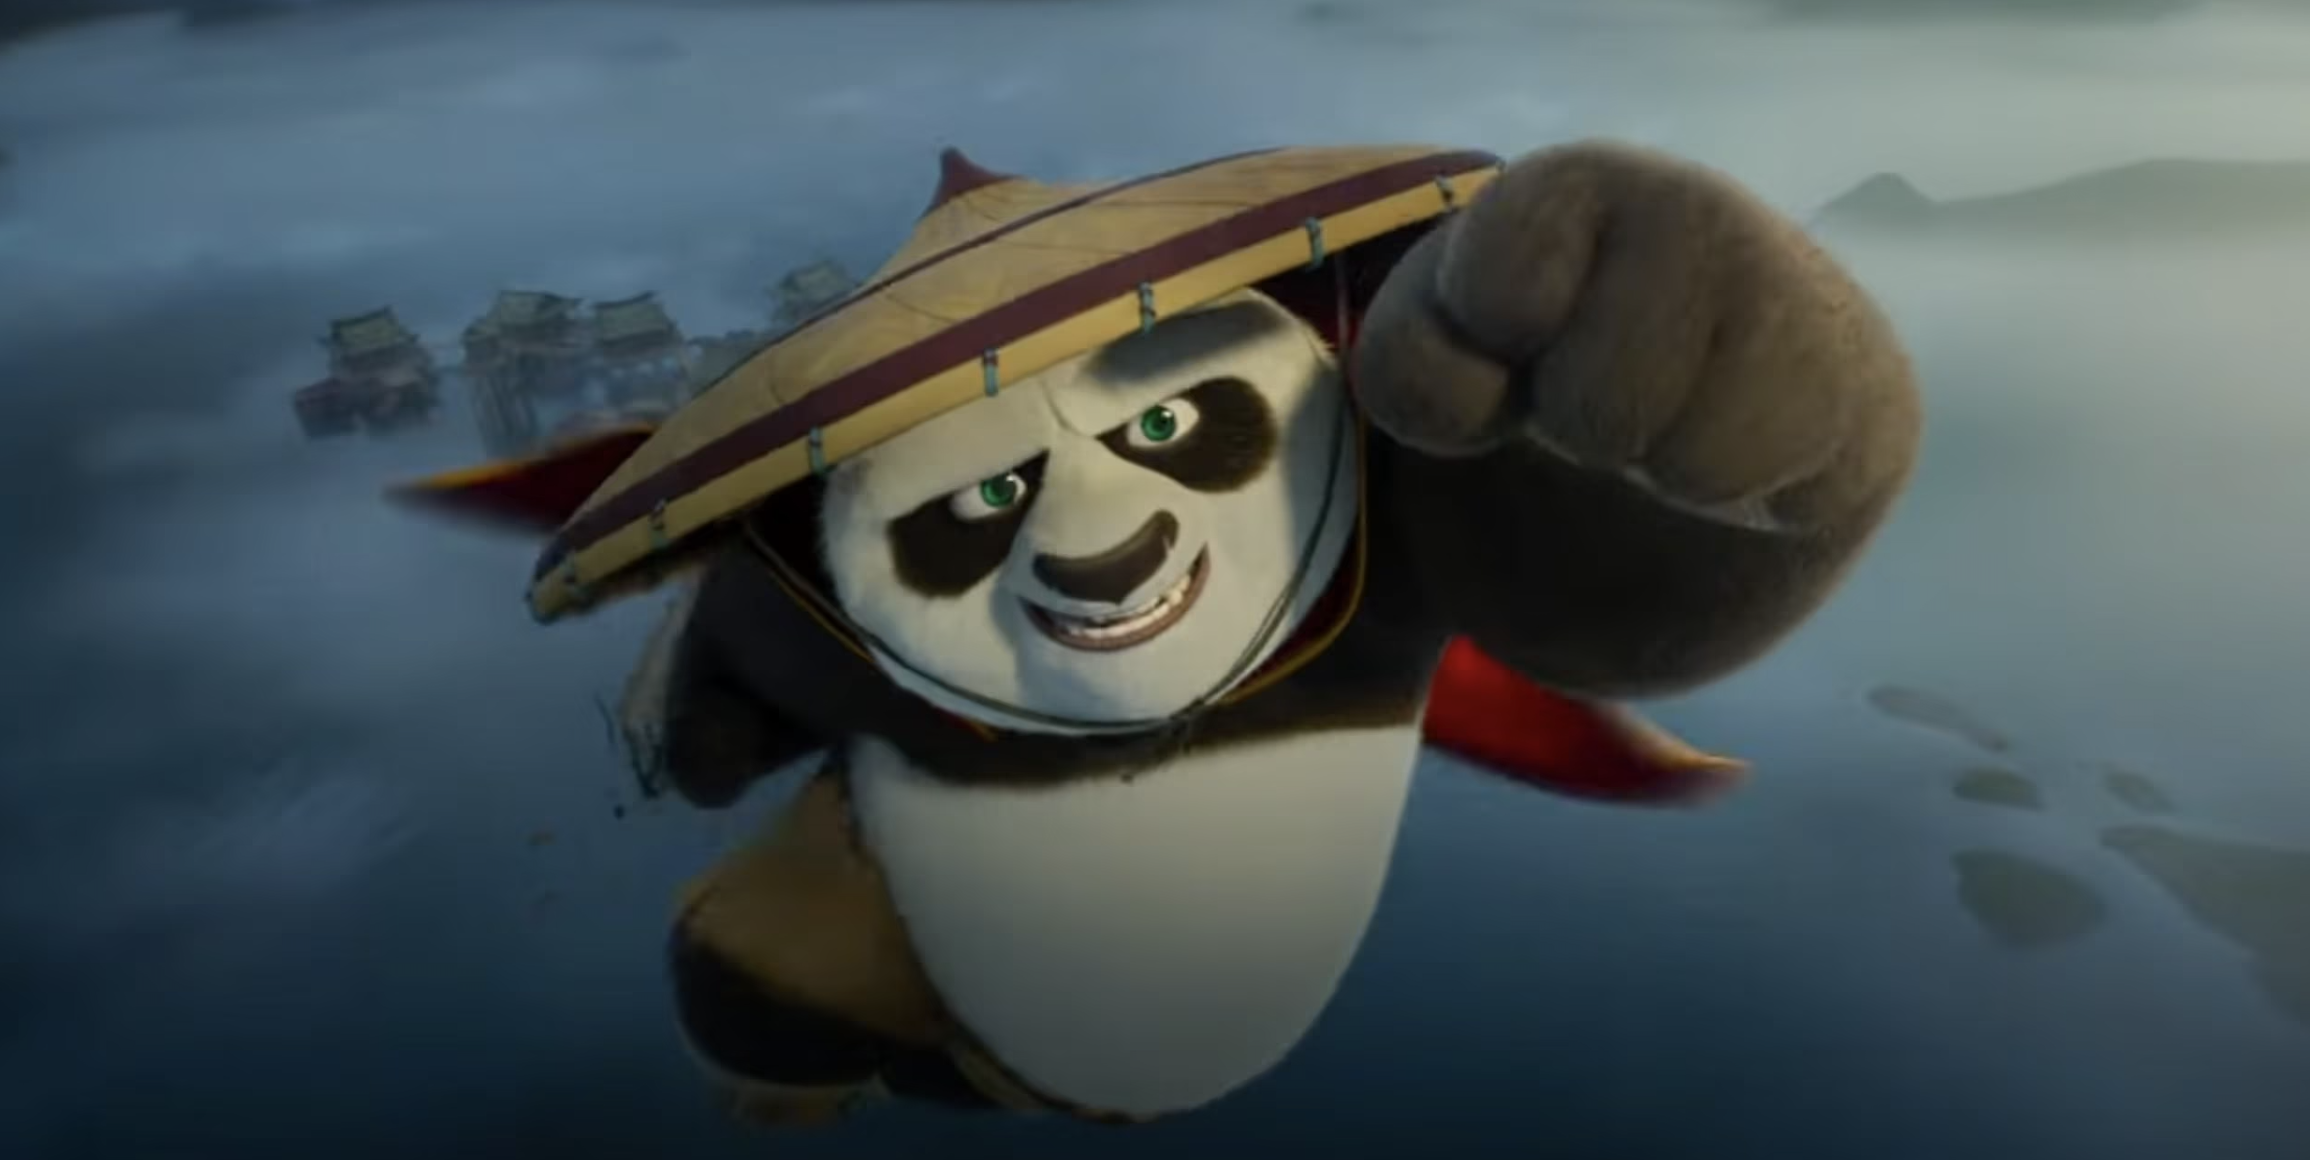 

	
		Crítica de "Kung Fu Panda 4": Jack Black se lo toma en serio, pero no le queda mucha chispa
	
	